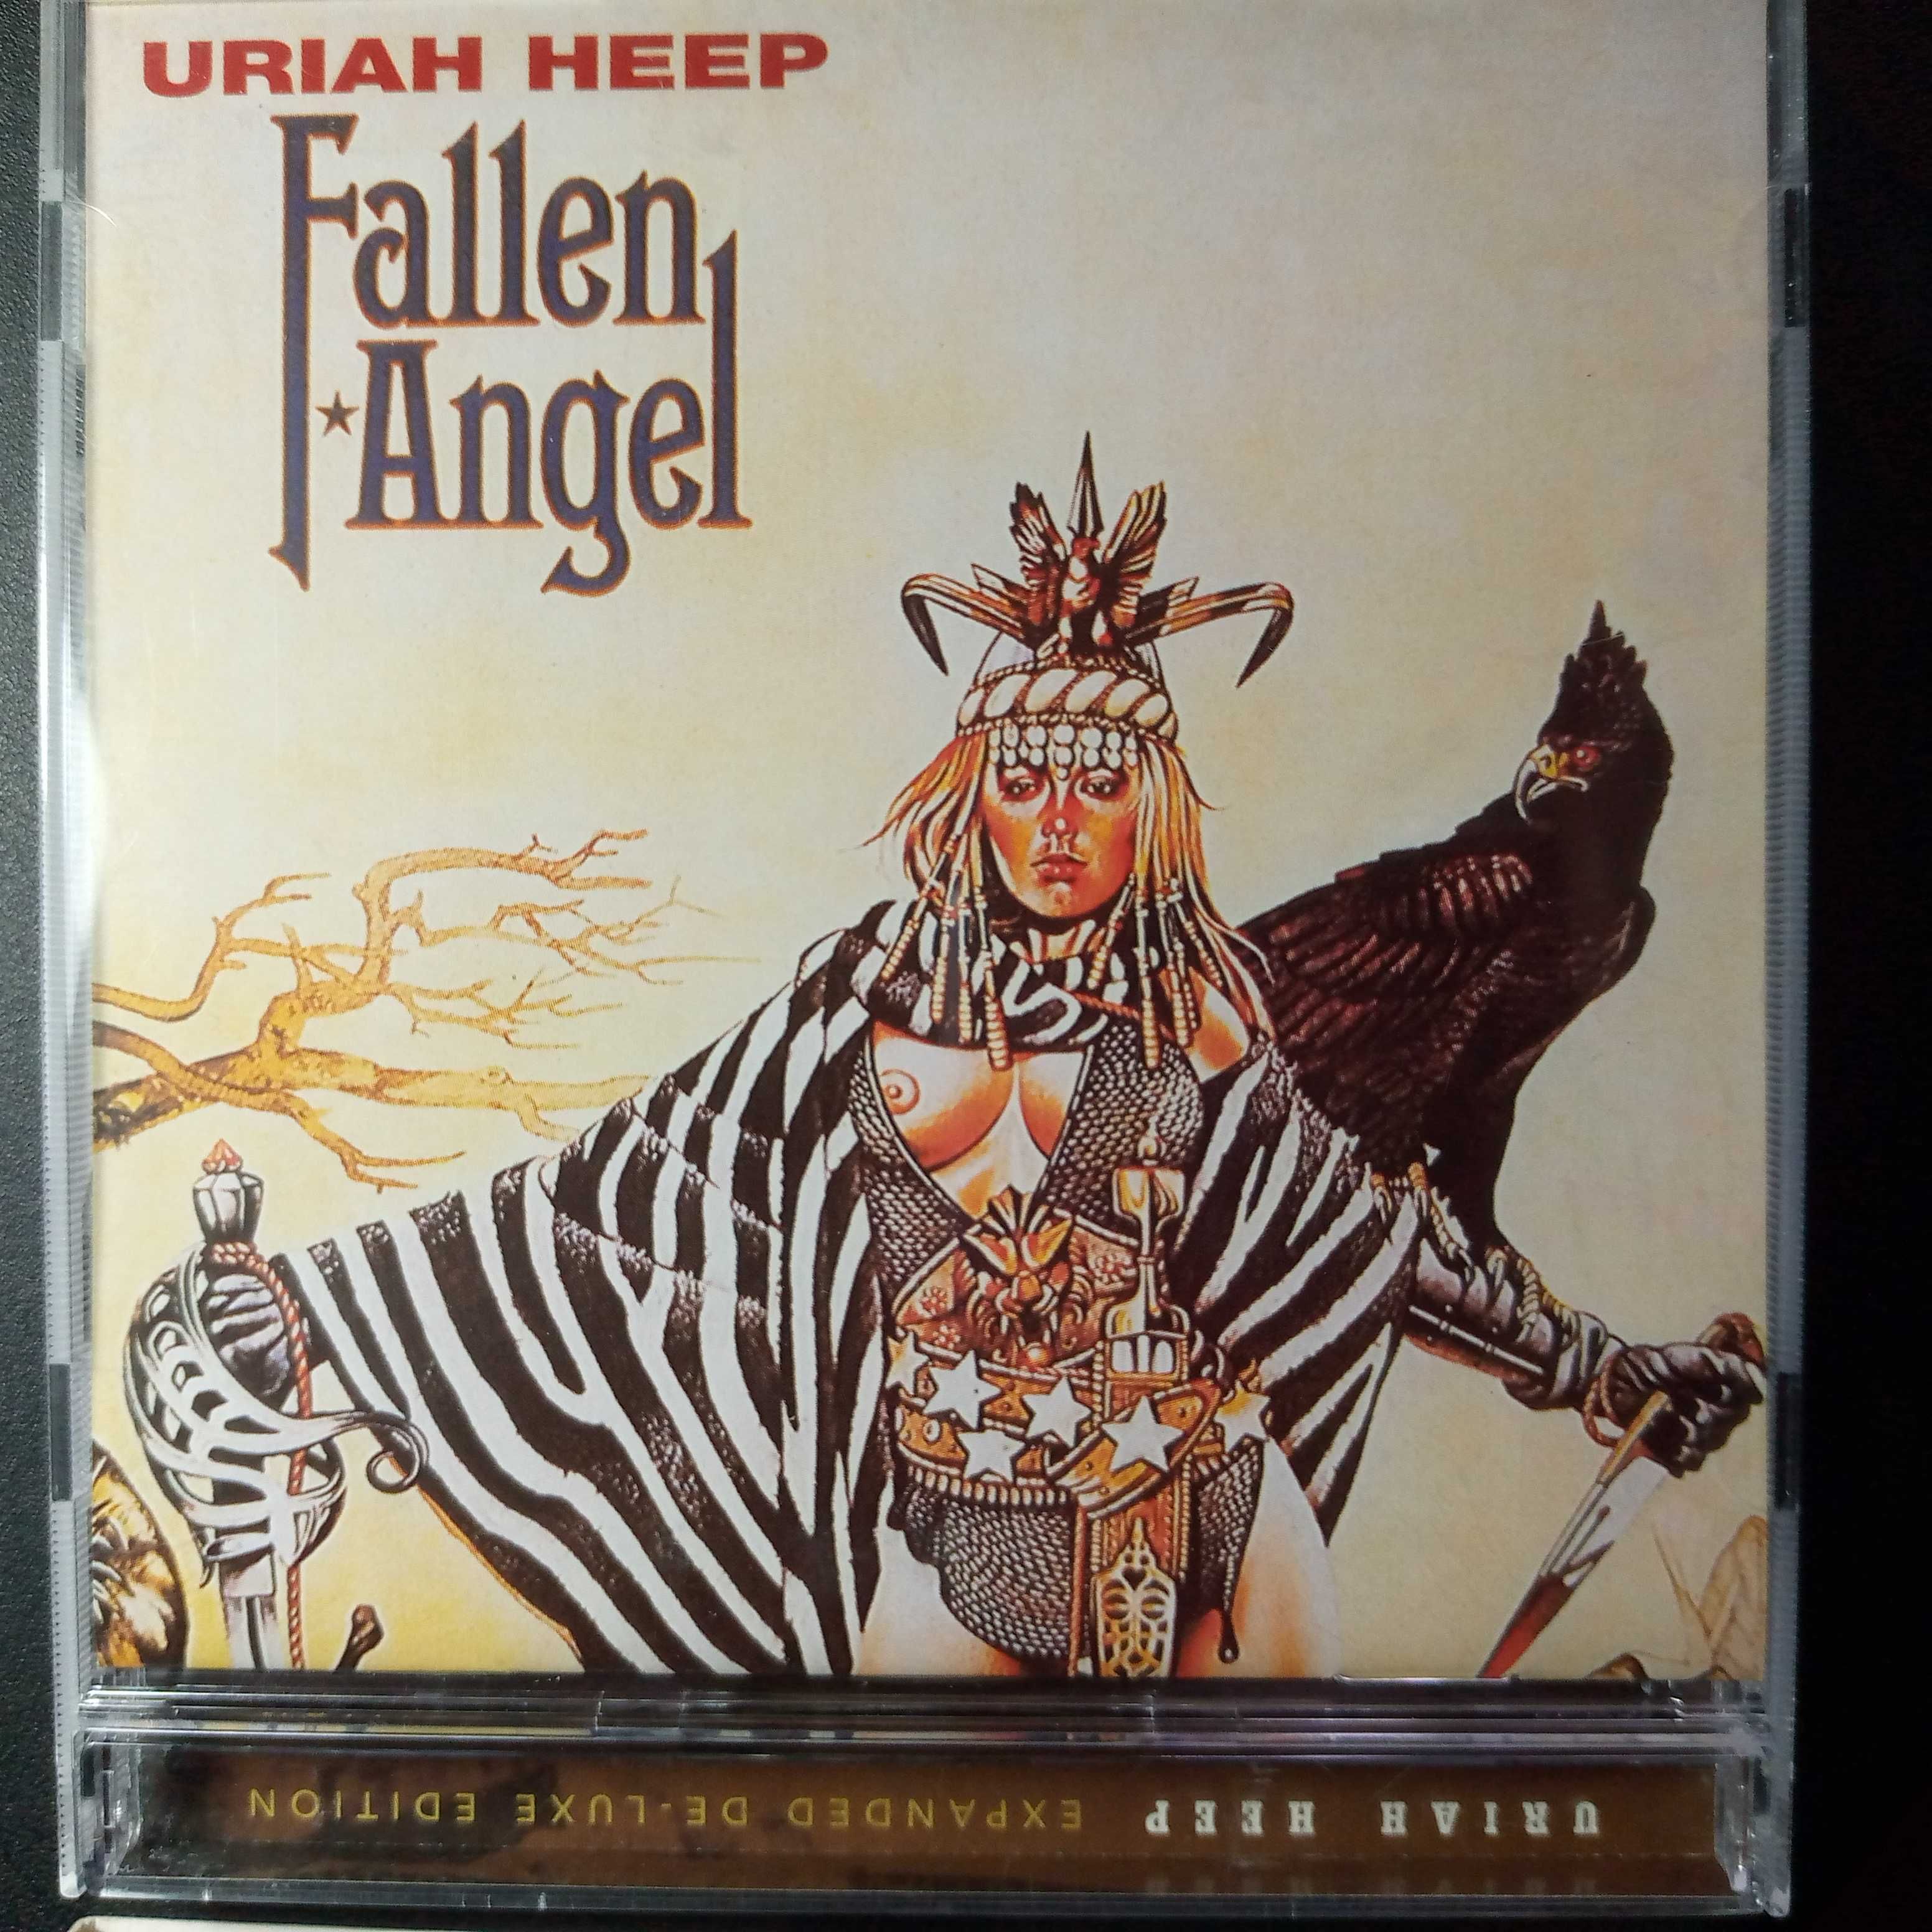 Uriah Heep – Fallen Angel CD  Deluxe Edition, Remastered 2004